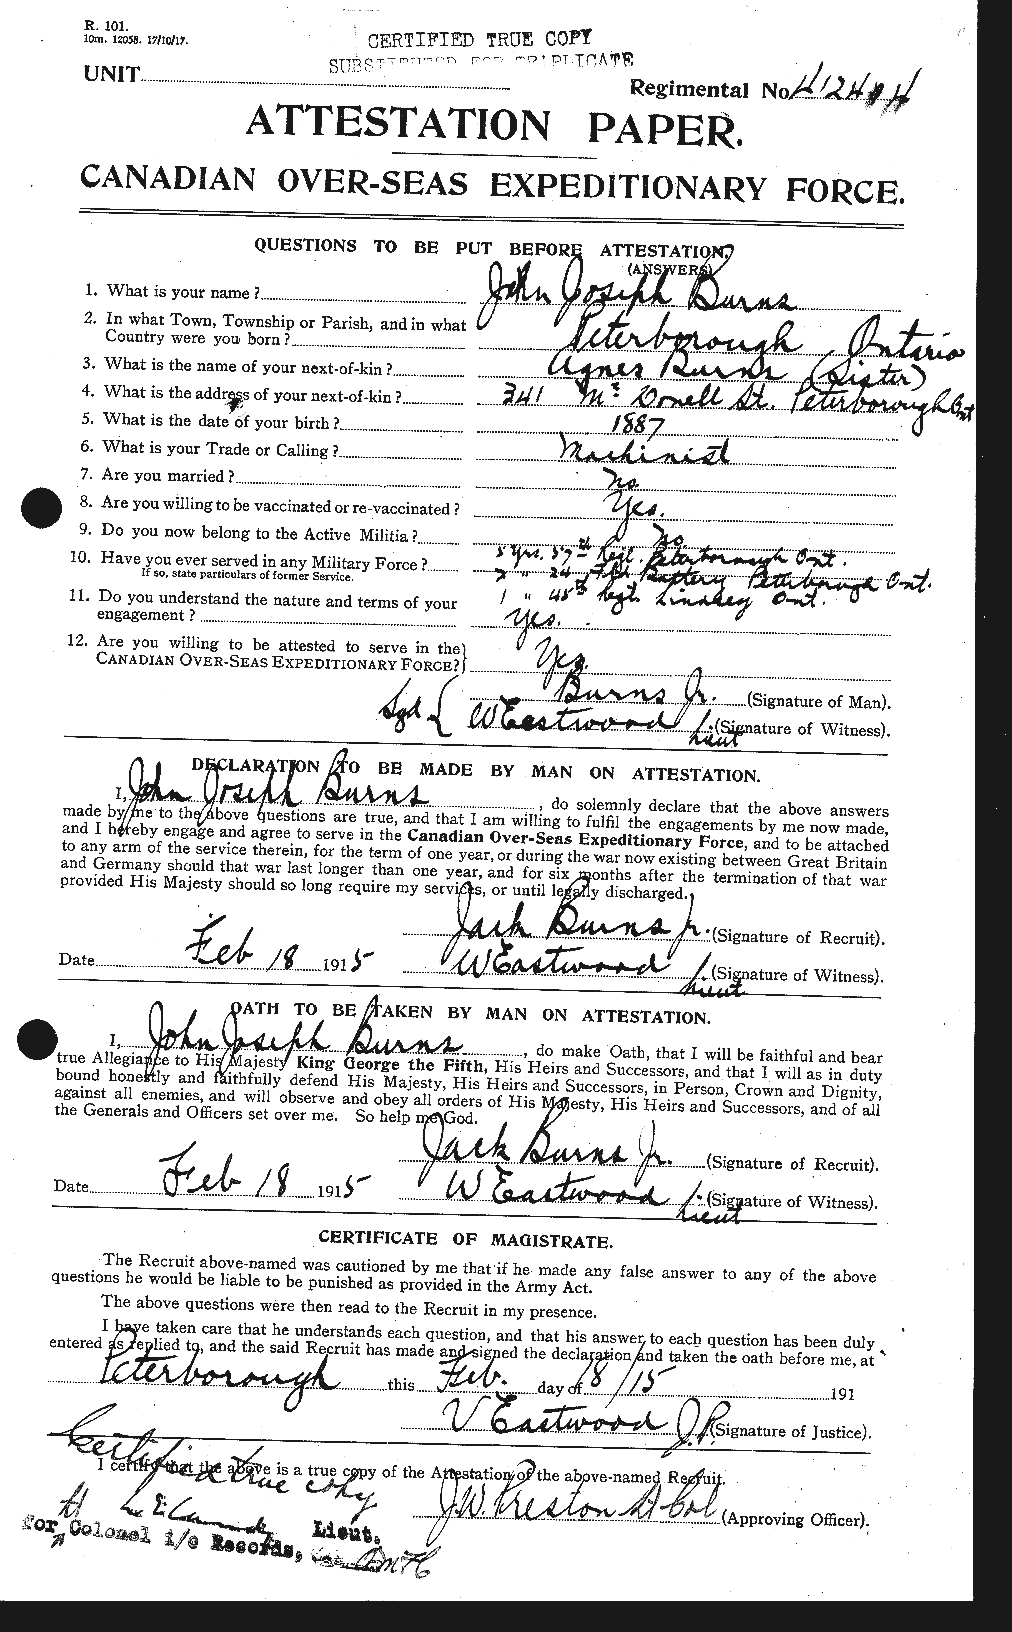 Dossiers du Personnel de la Première Guerre mondiale - CEC 275497a